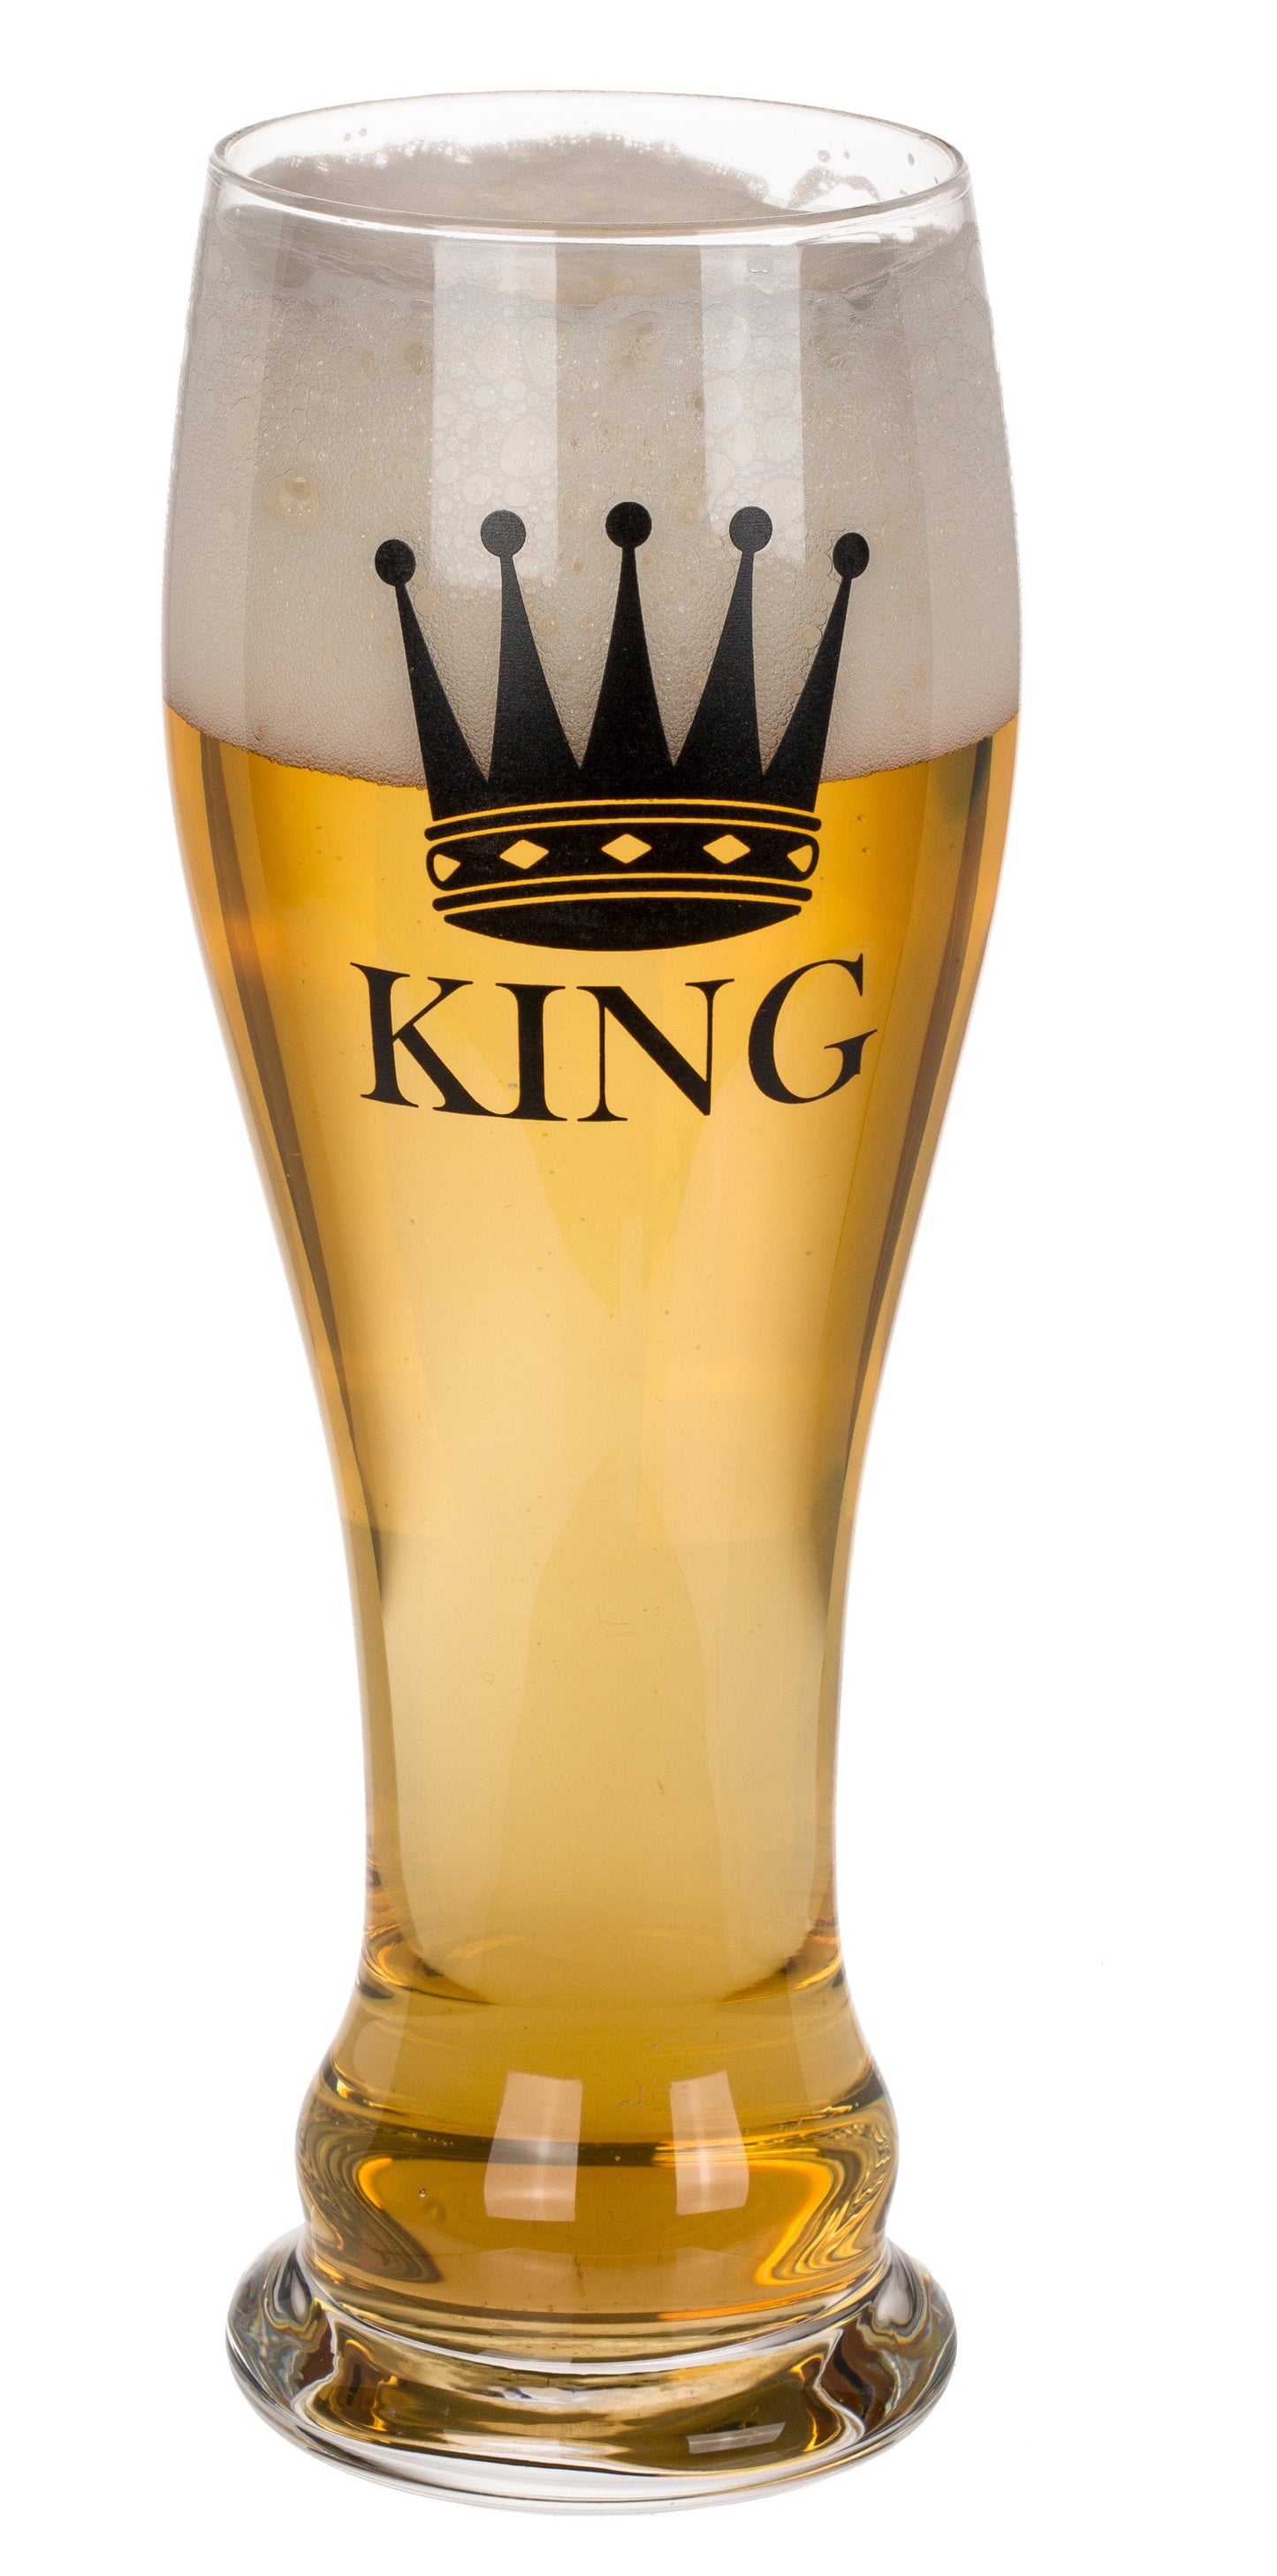 Drikkeglass sett, King and Queen